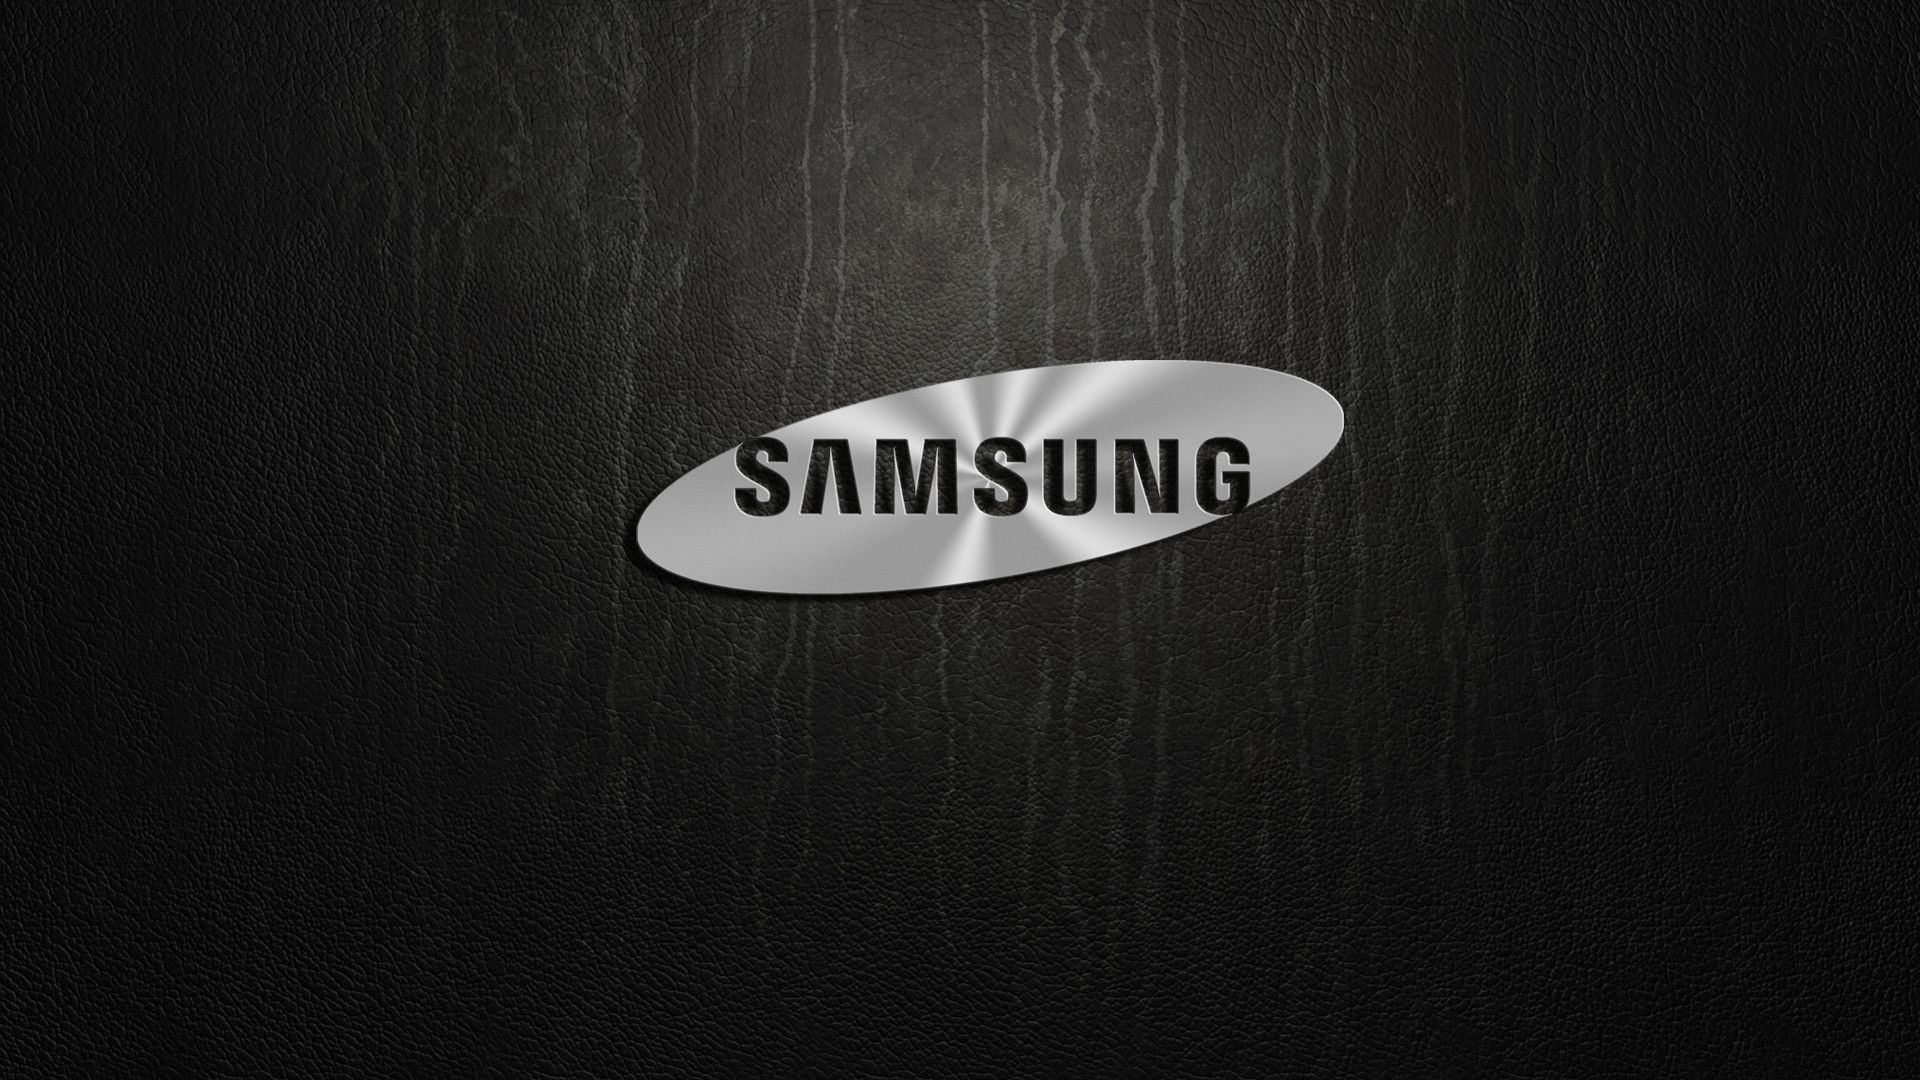 Hãy thưởng thức hình nền Samsung độc đáo với logo tạo hoạt hình tinh tế và bắt mắt. Đây sẽ là sự lựa chọn tuyệt vời để làm nổi bật màn hình của bạn.